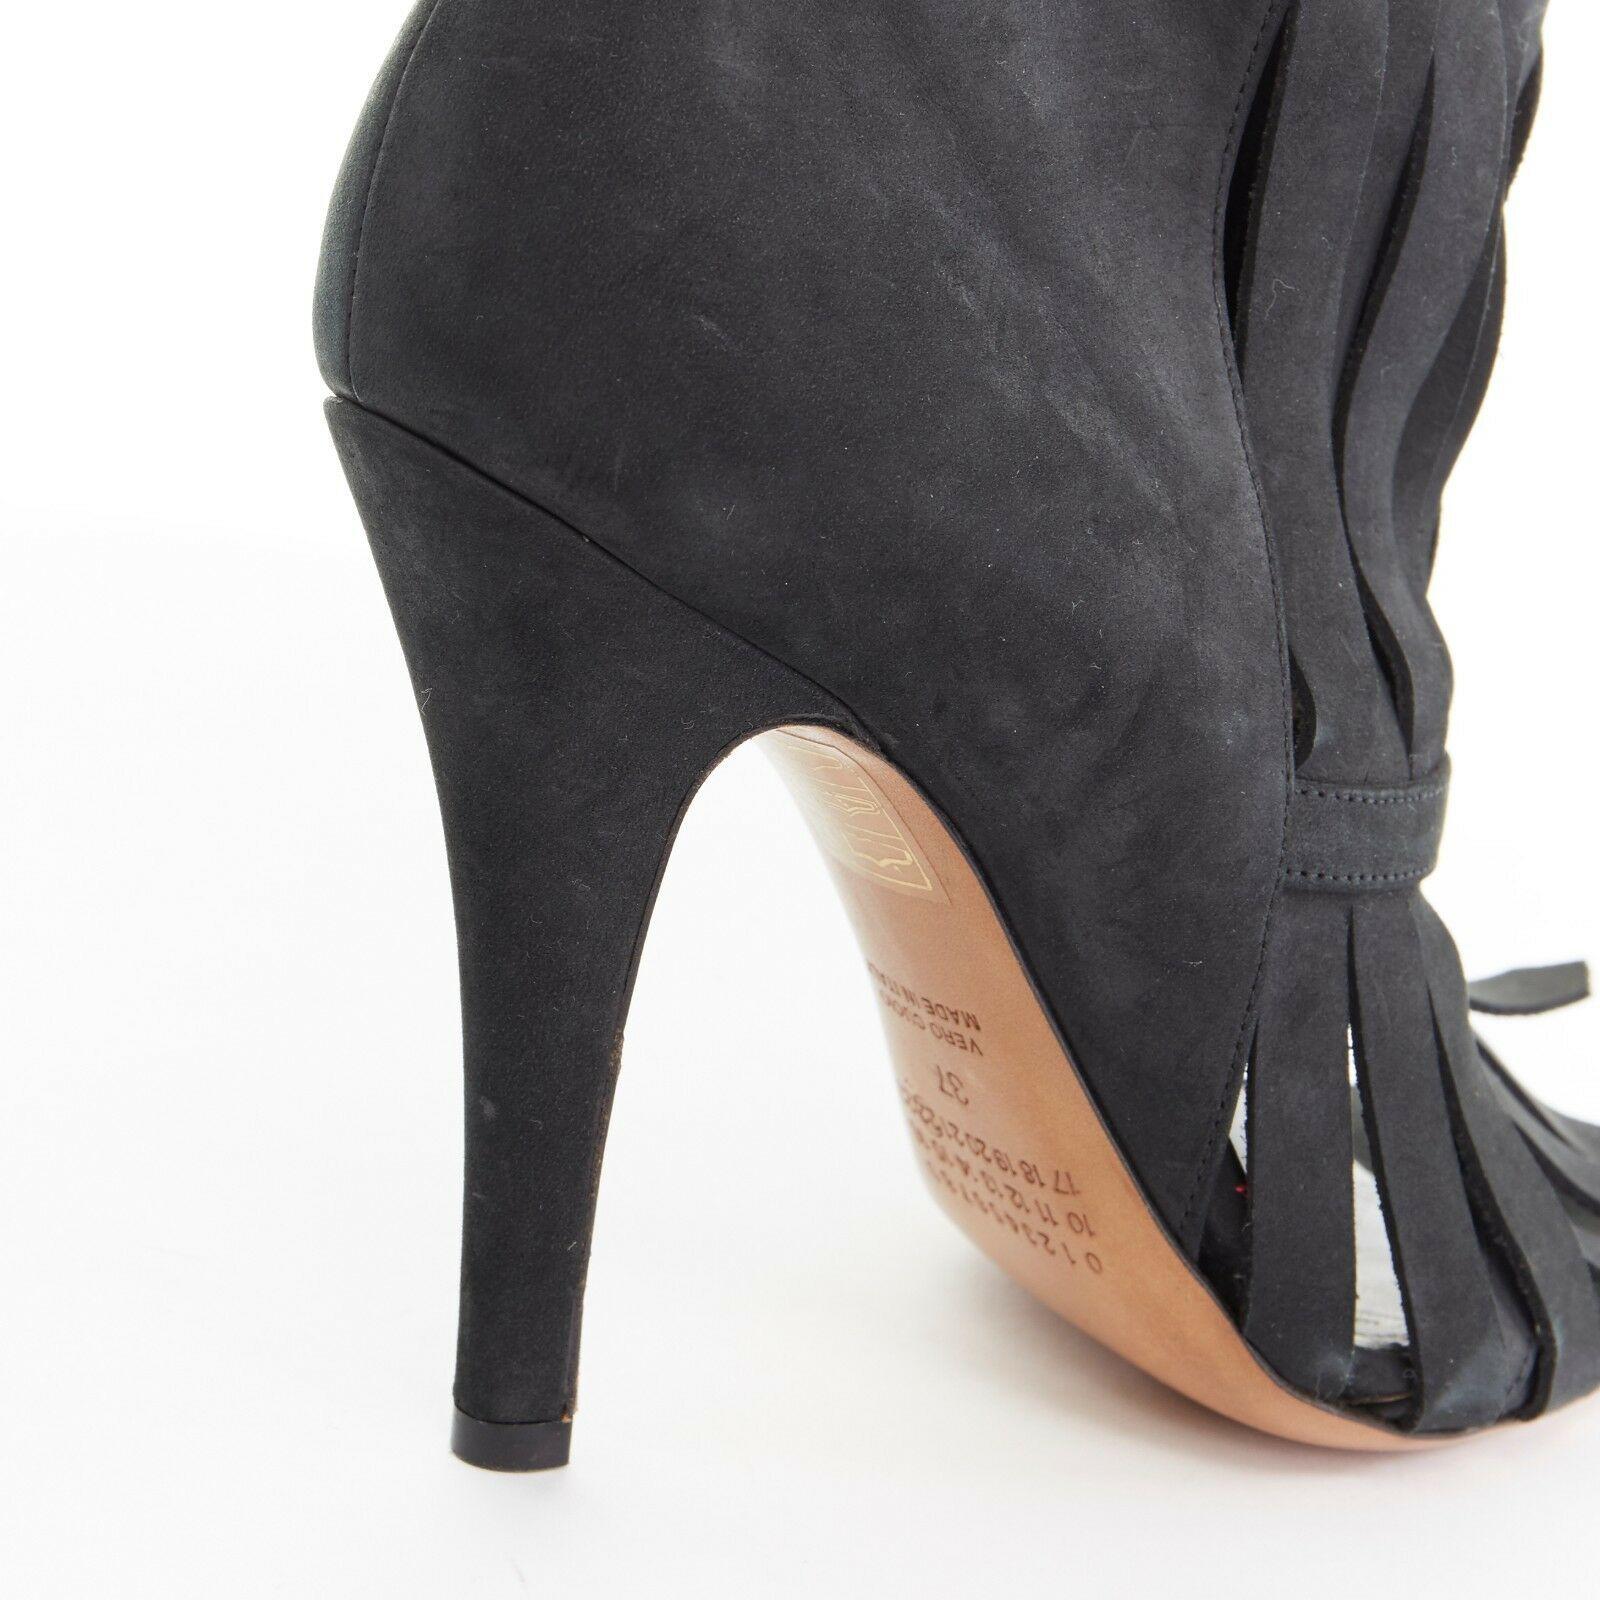 Women's new MAISON MARGIELA black suede shredded fringe open toe bootie heels EU37 US7